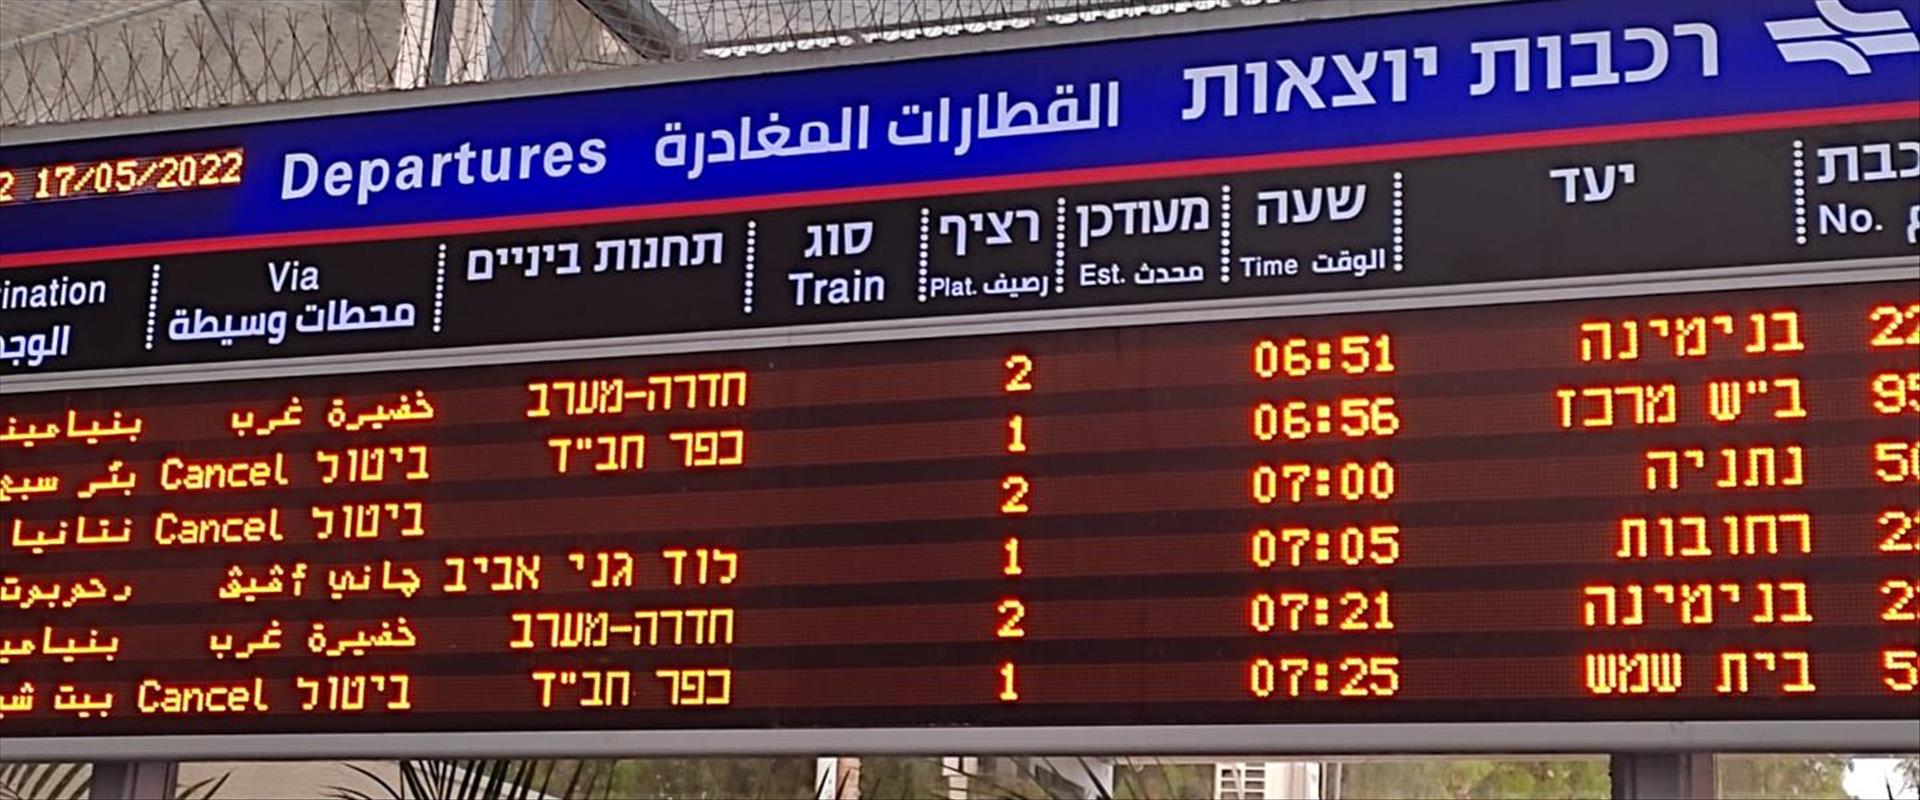 לוח הזמנים של הרכבת היום